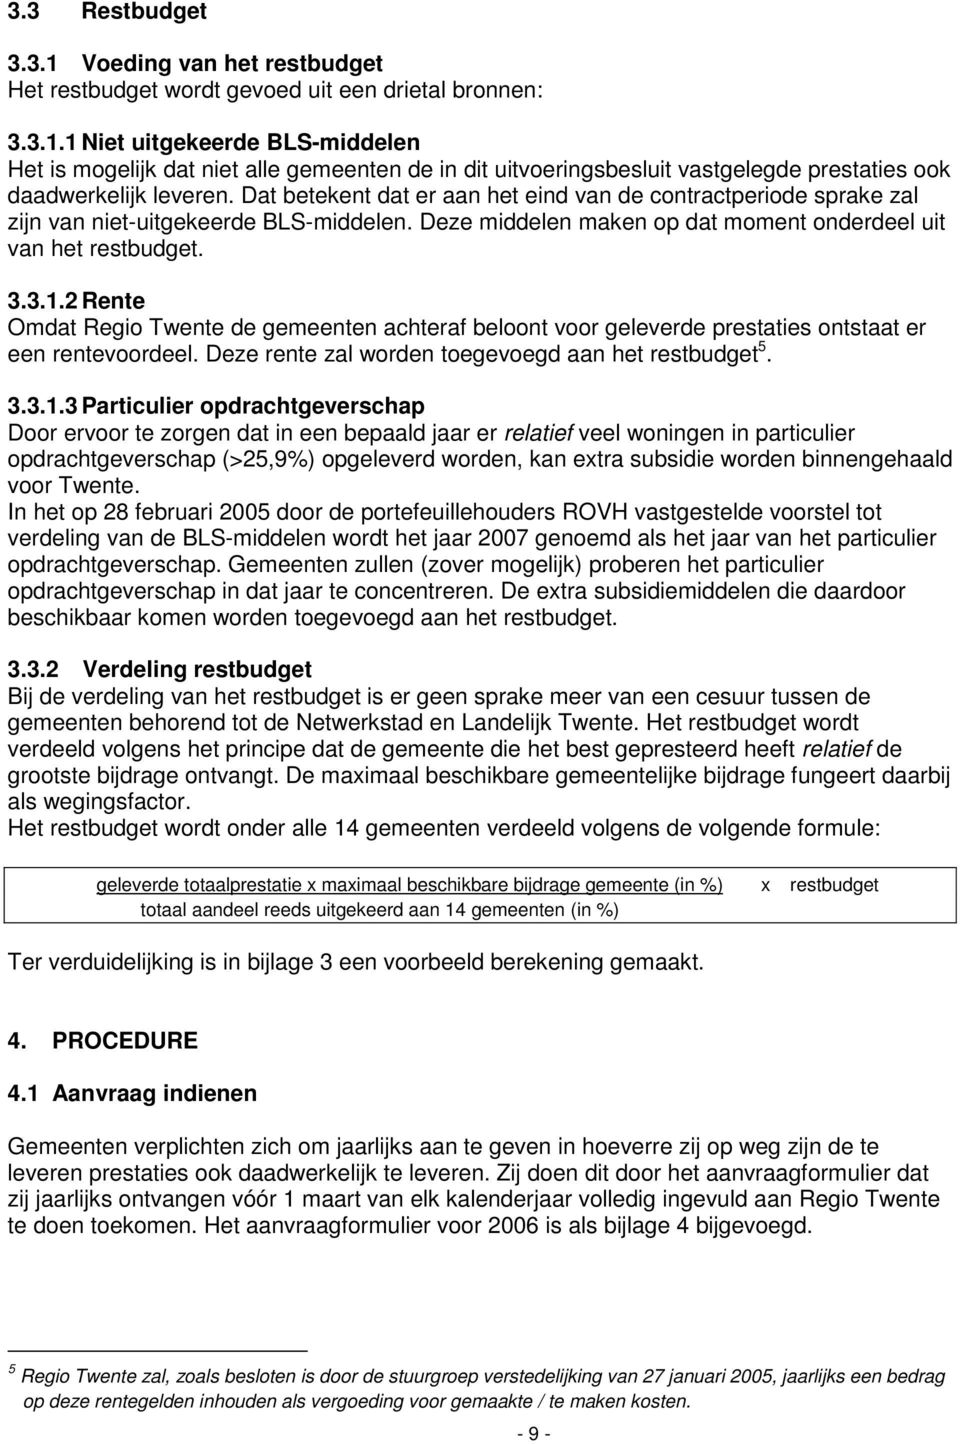 2 Rente Omdat Regio Twente de gemeenten achteraf beloont voor geleverde prestaties ontstaat er een rentevoordeel. Deze rente zal worden toegevoegd aan het restbudget 5. 3.3.1.